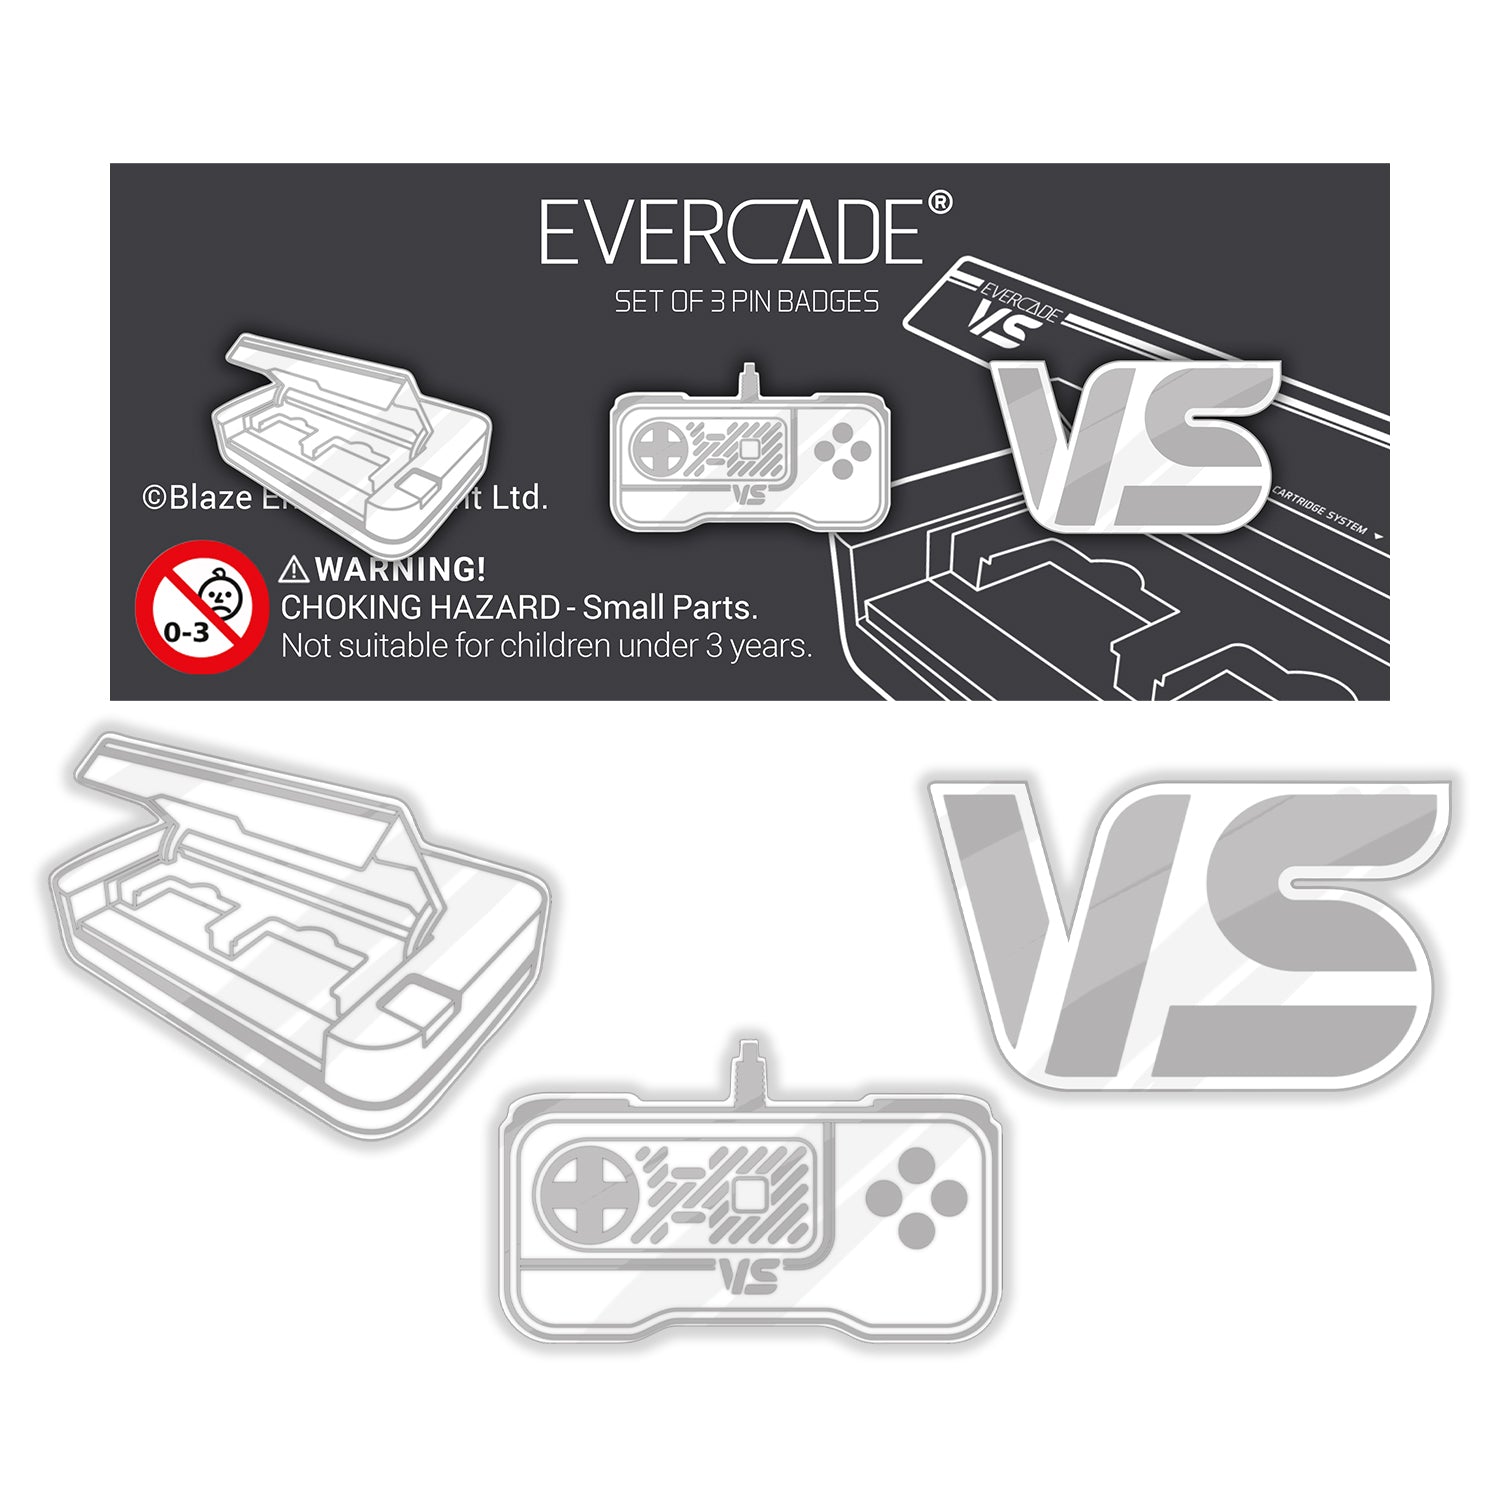 Console videogioco EVERCADE Vs Premium 2 Controller + 2 Cartucce White e  Red 1068217